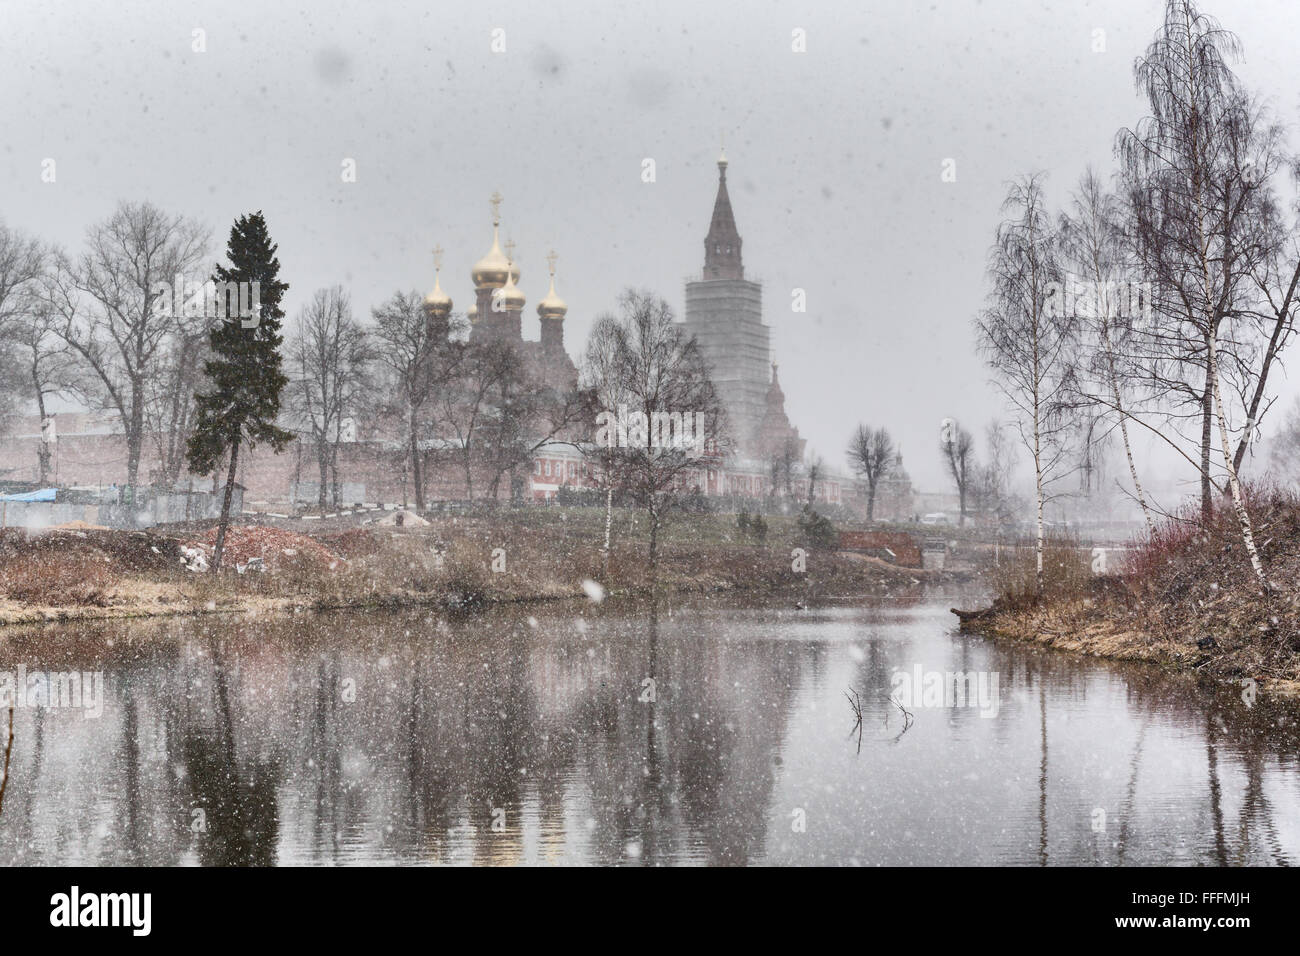 Snowfall, Chernigovsky skete, Sergiev posad, Moscow region, Russia Stock Photo